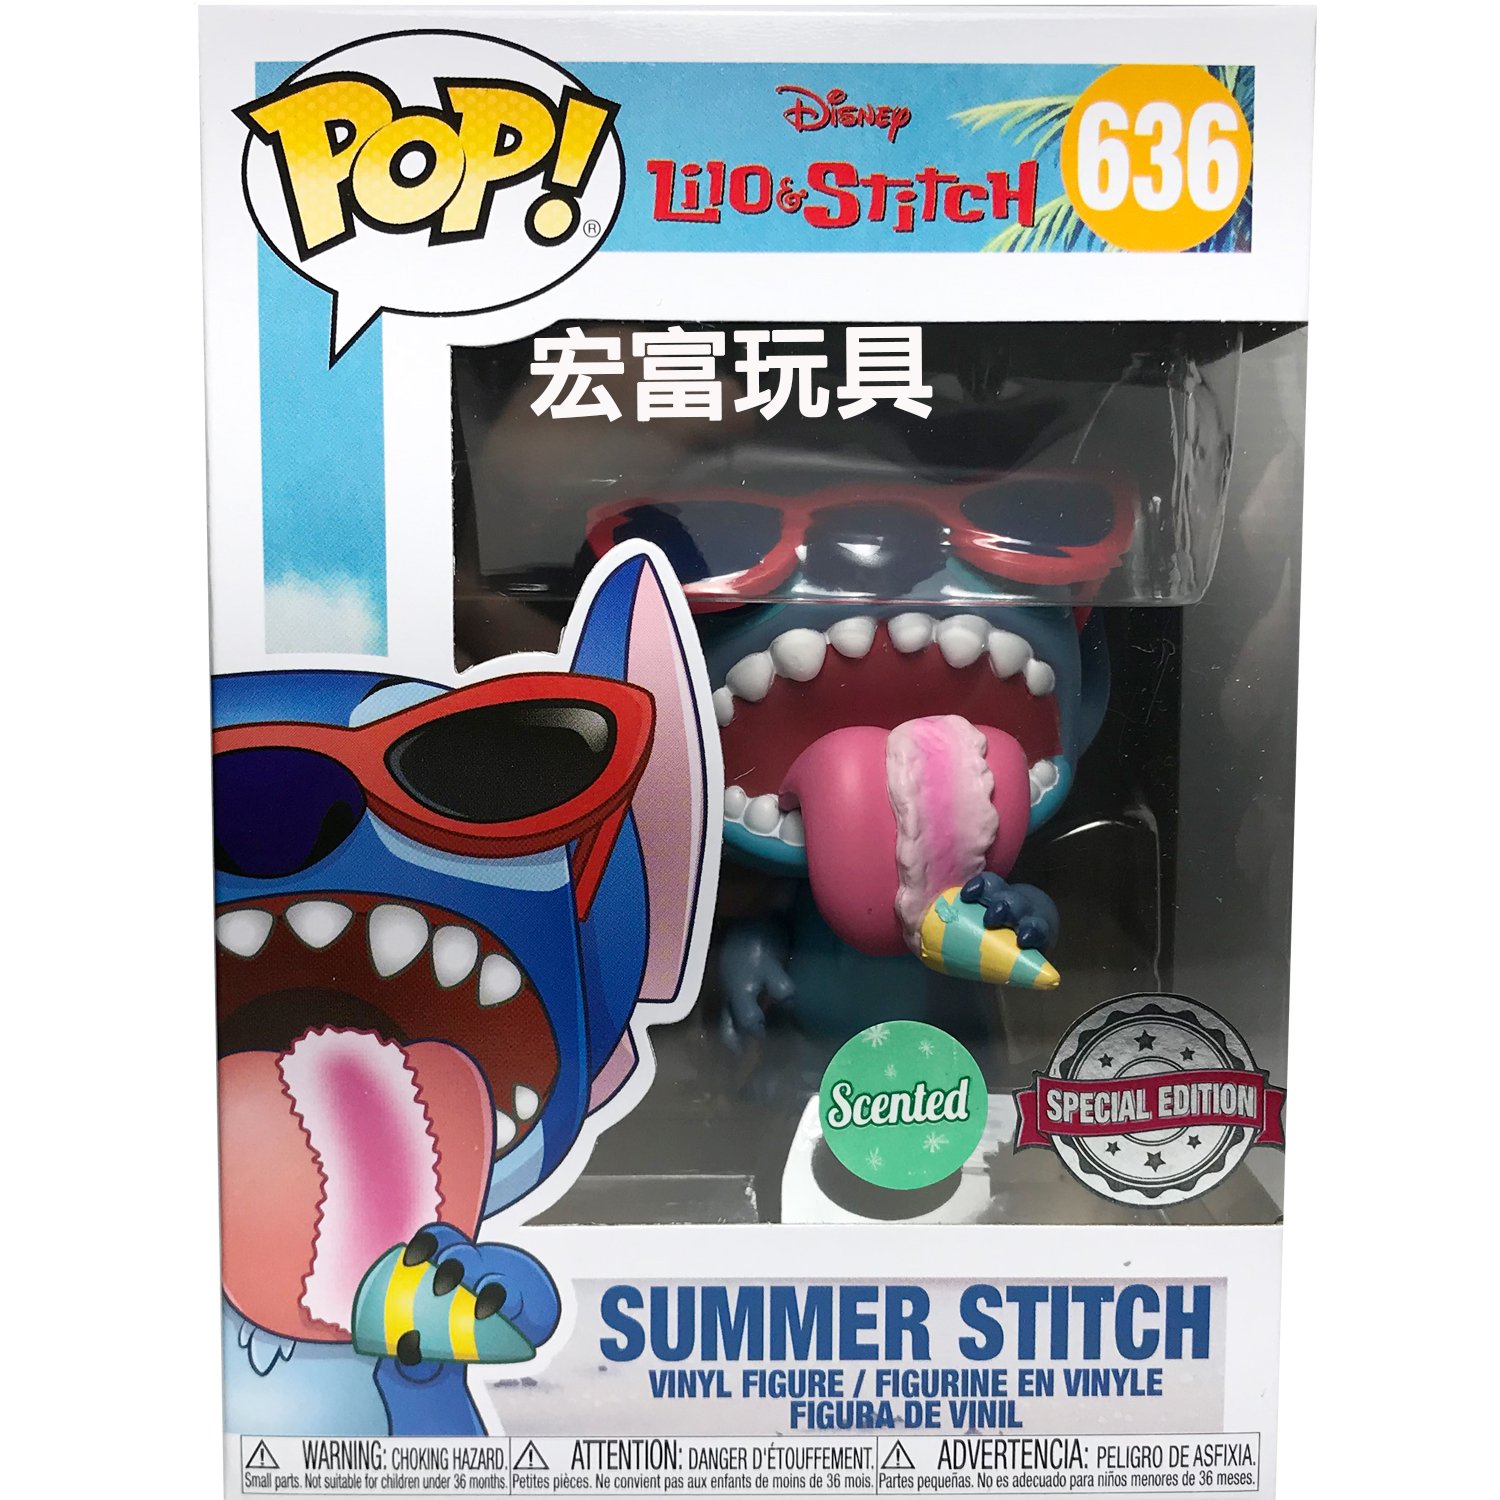 FUNKO POP迪士尼 Lilo&Stitch 636 夏日史迪奇